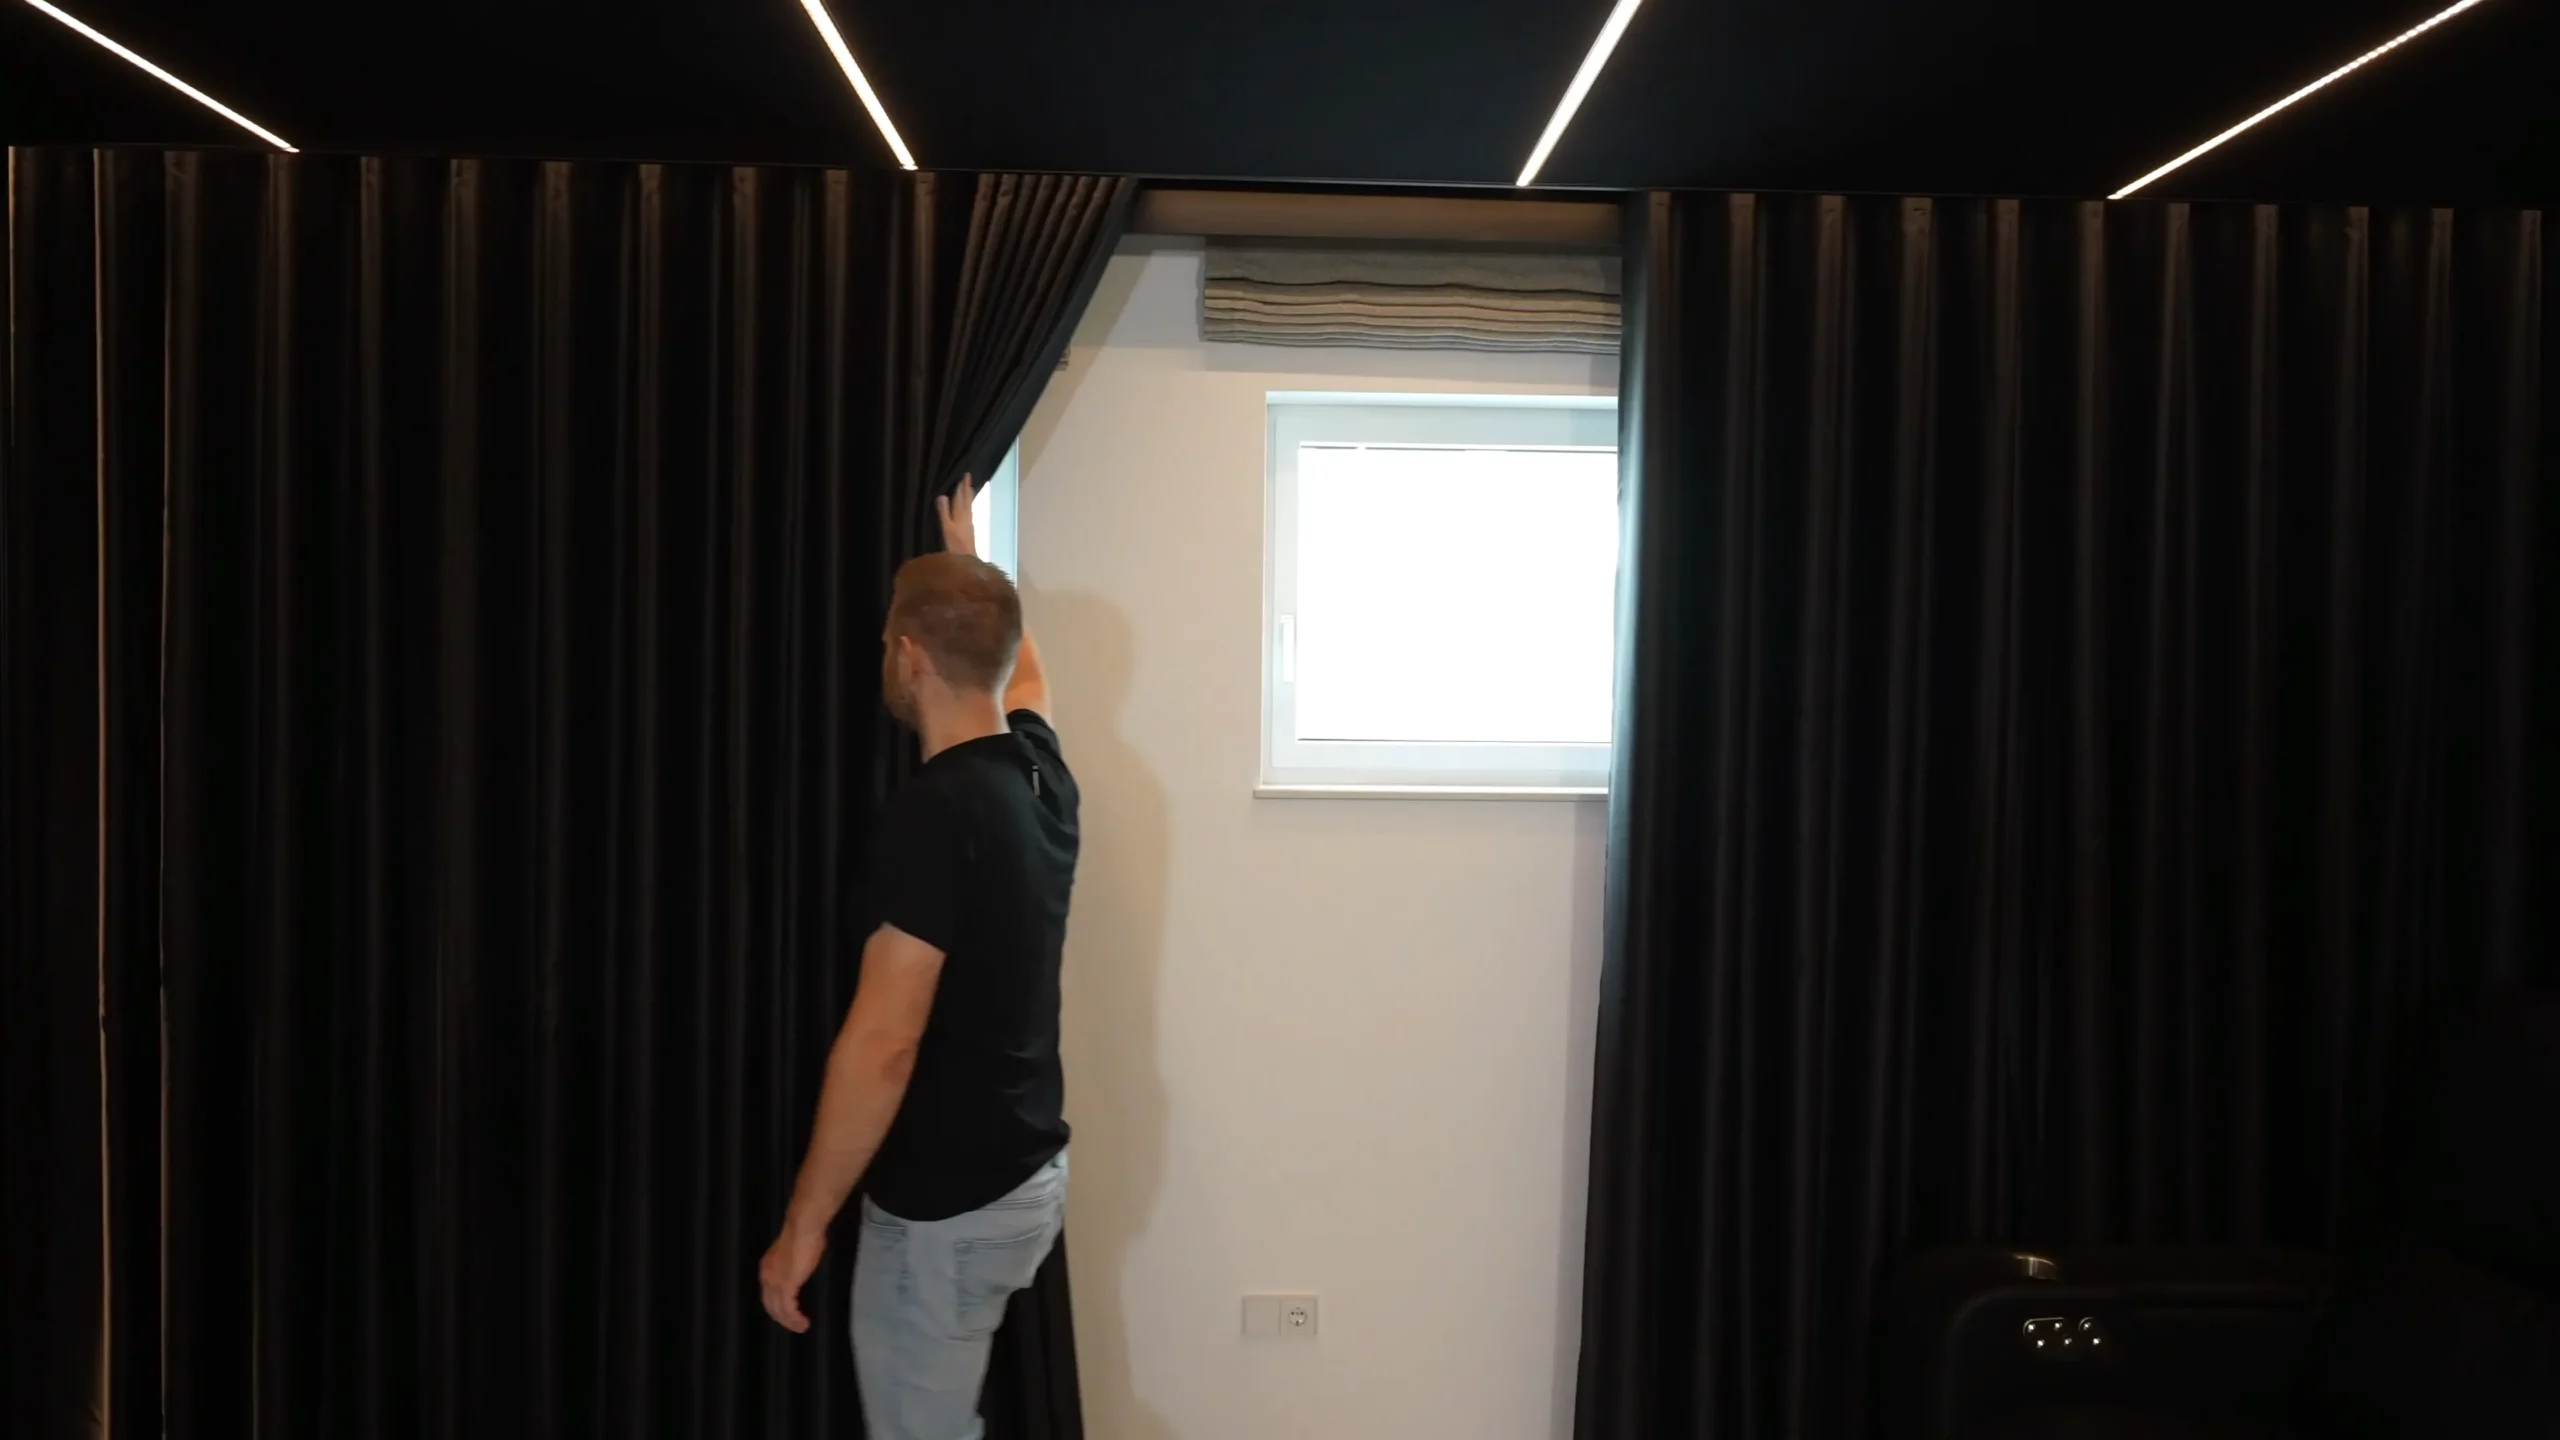 Sebastian vom AVITECT Studio Rhein-Main zeigt, dass sich hinter den Vorhängen auf der rechten Seite Fenster für die Frischluftzufuhr verbergen.